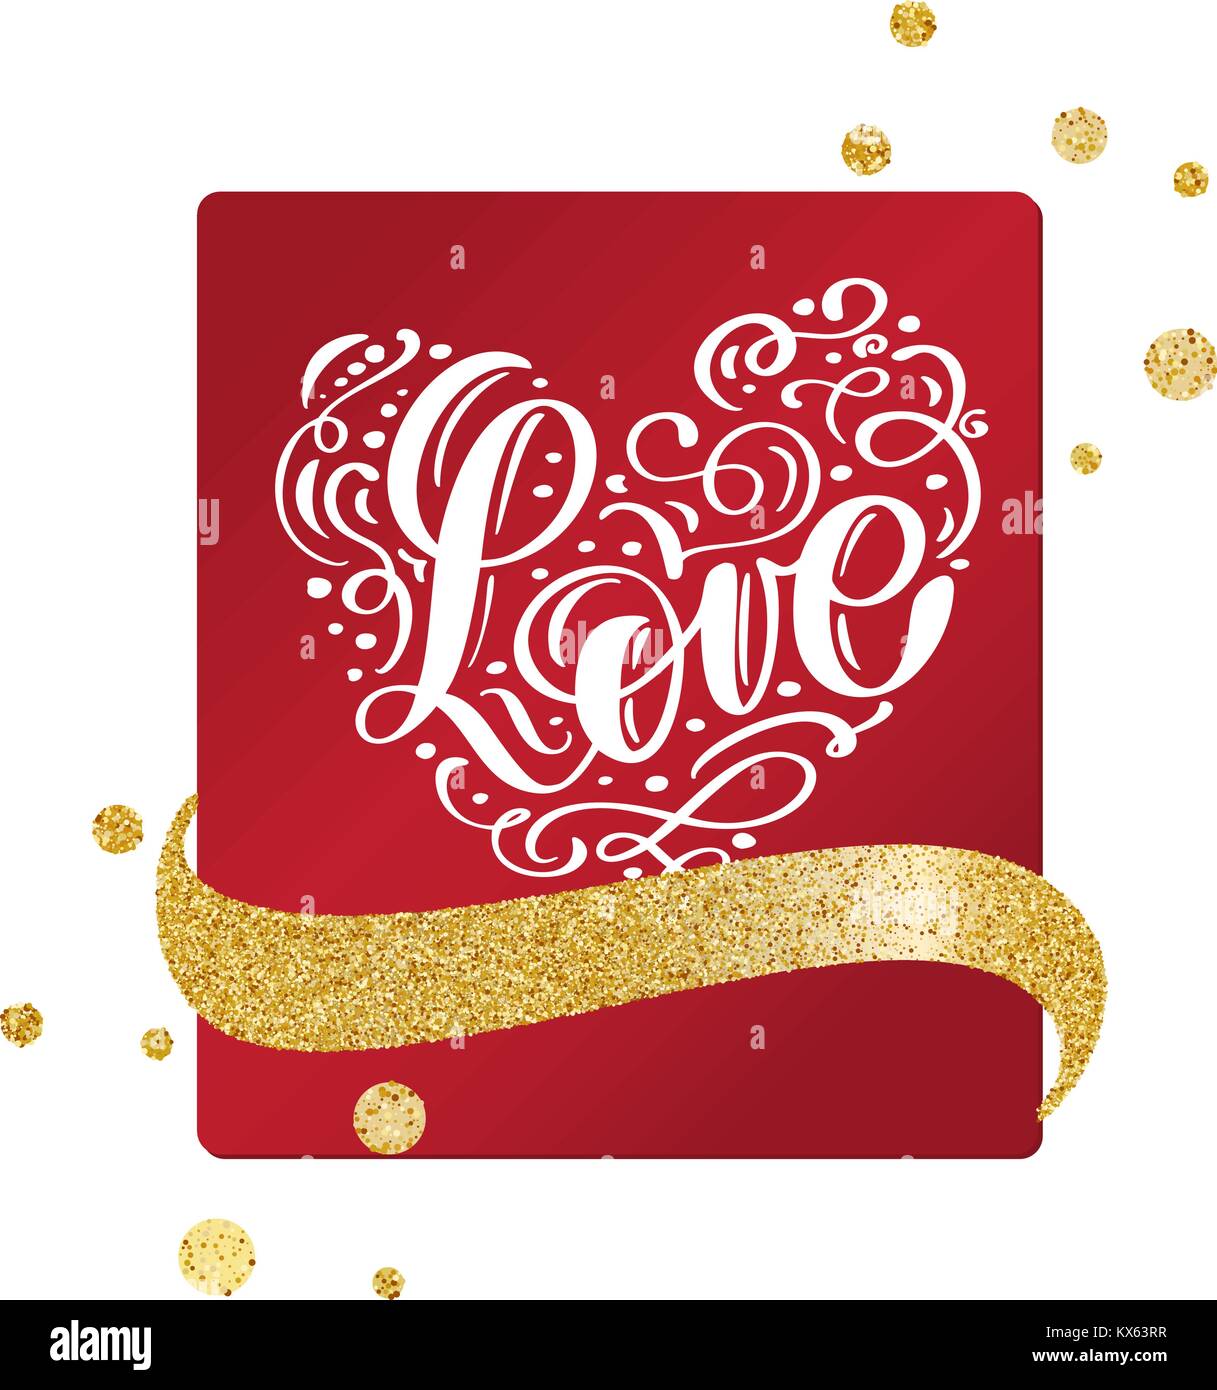 Carte de la Saint-Valentin avec coeur vintage et de l'écriture du ruban d'or de l'amour avec lettrage Illustration de Vecteur